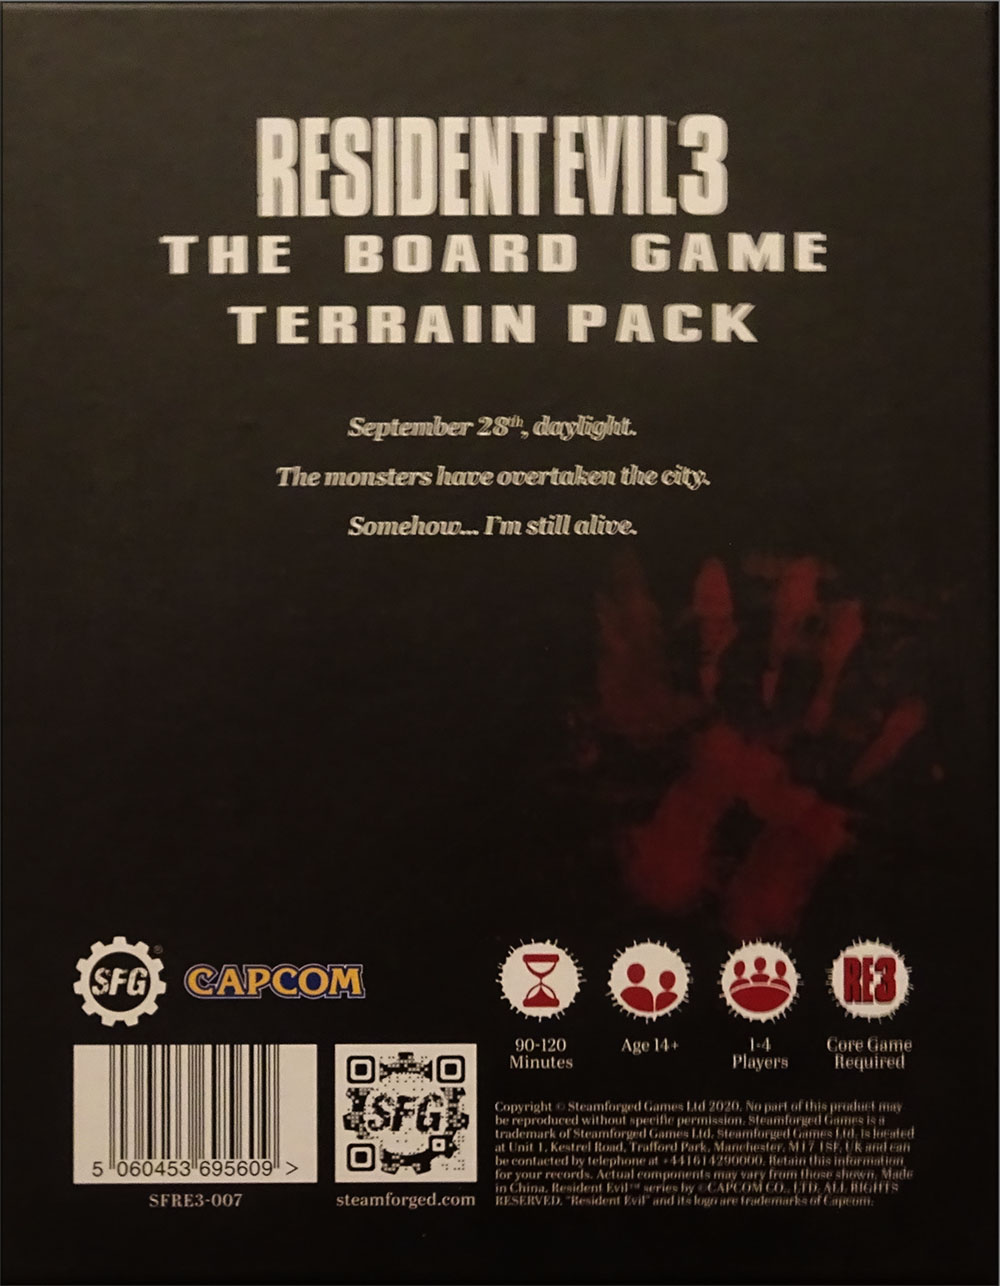 Resident Evil 3 Terrain Pack Expansion